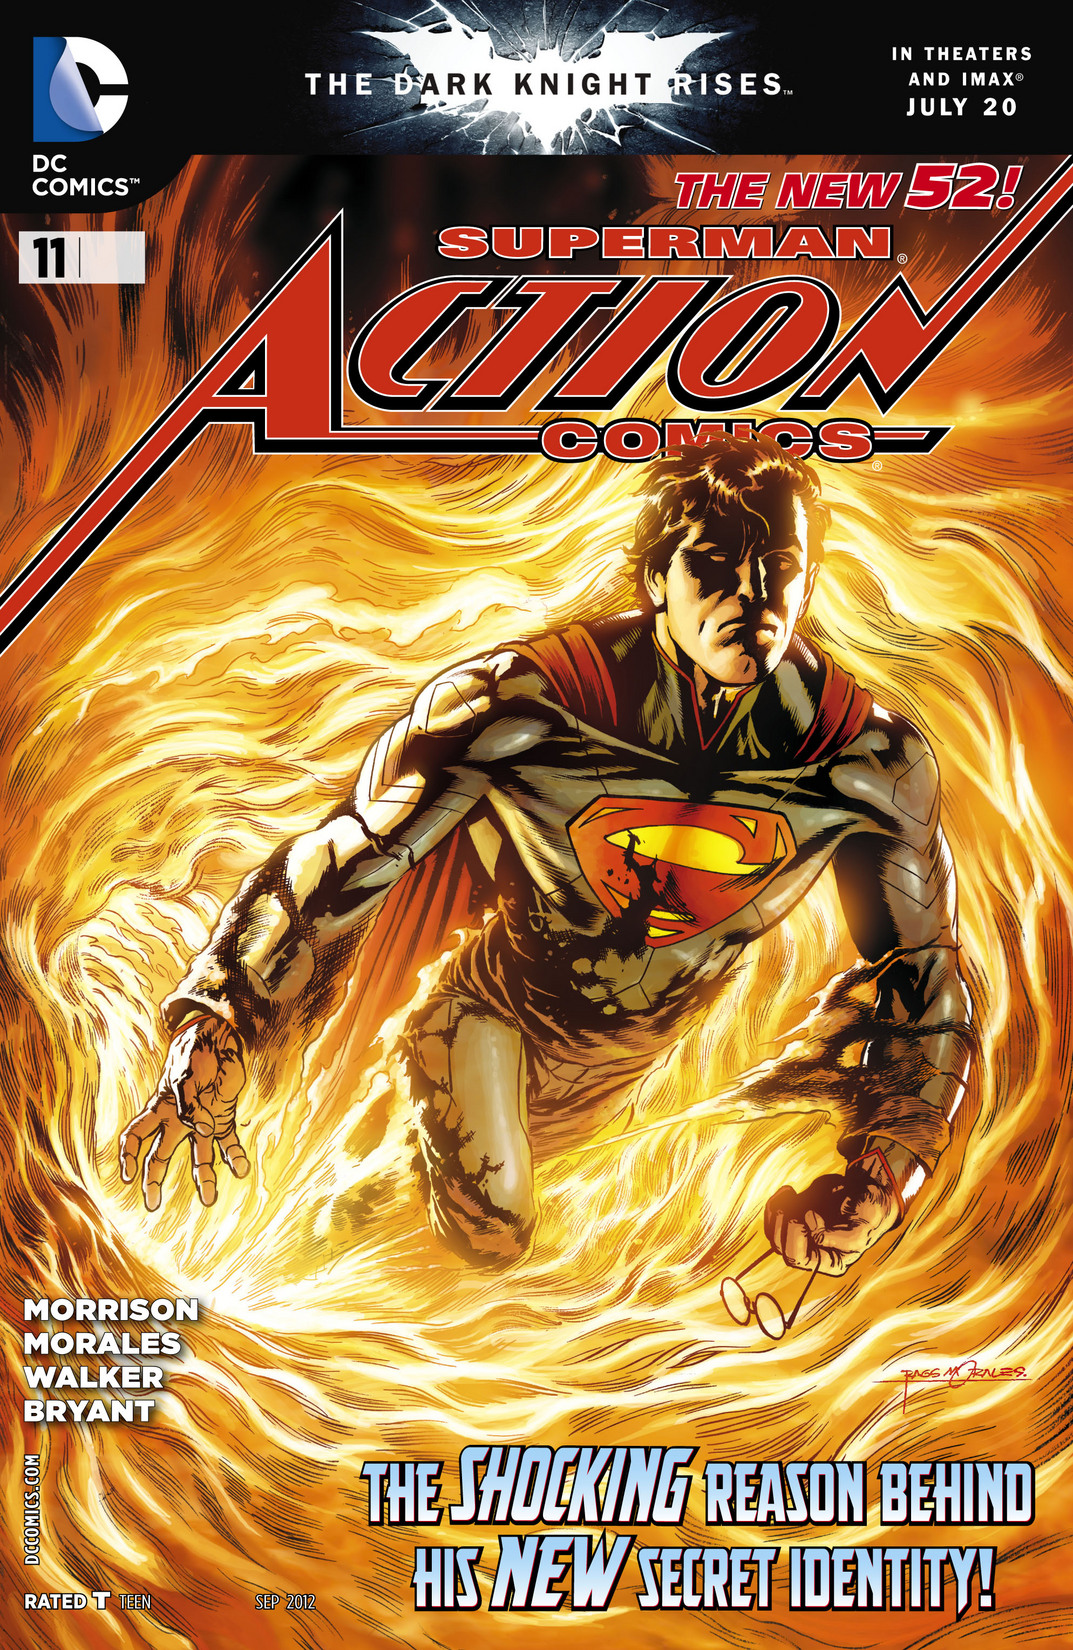 Action Comics Vol. 2 #11